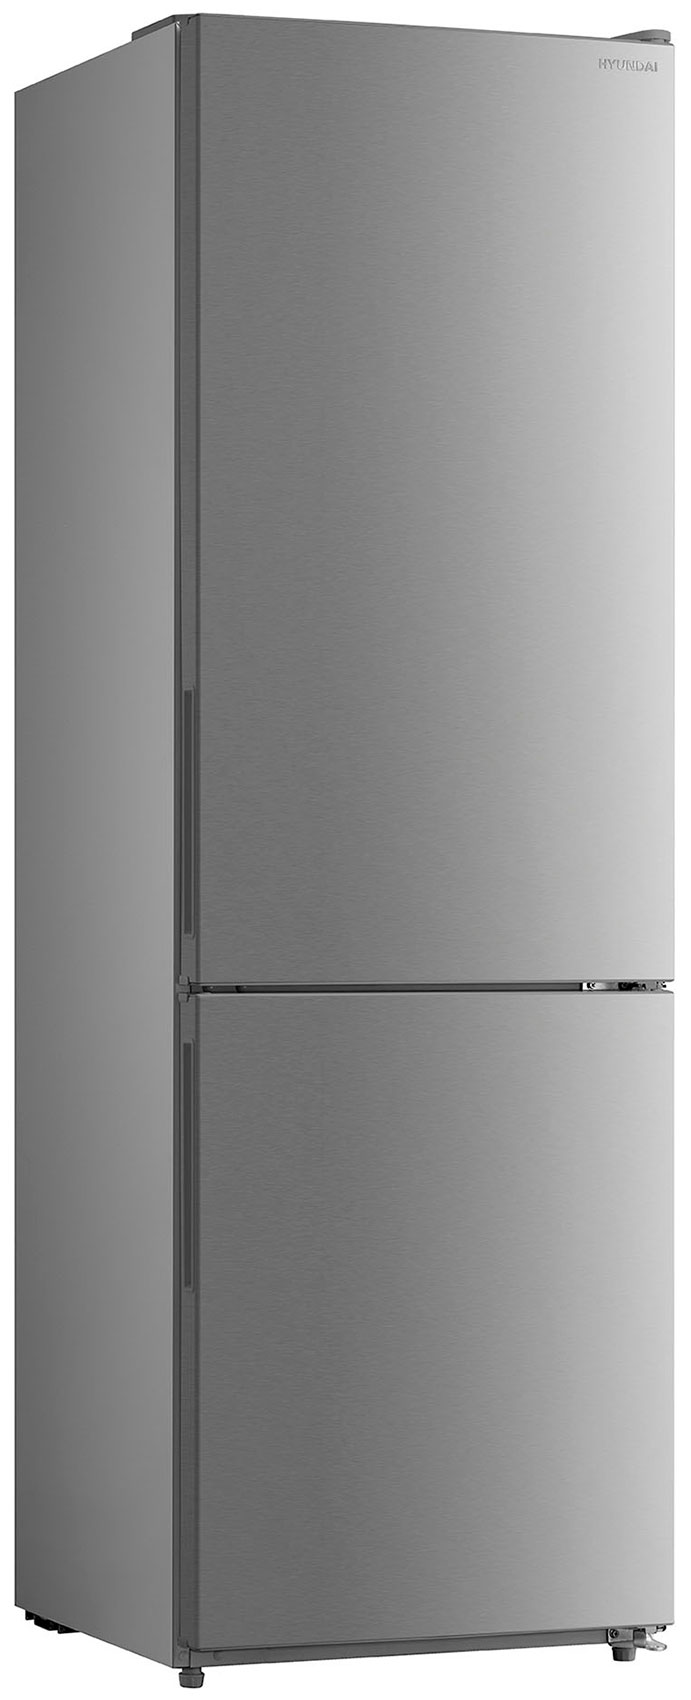 Двухкамерный холодильник Hyundai CC3093FIX нержавеющая сталь двухкамерный холодильник hyundai cc3093fix нержавеющая сталь